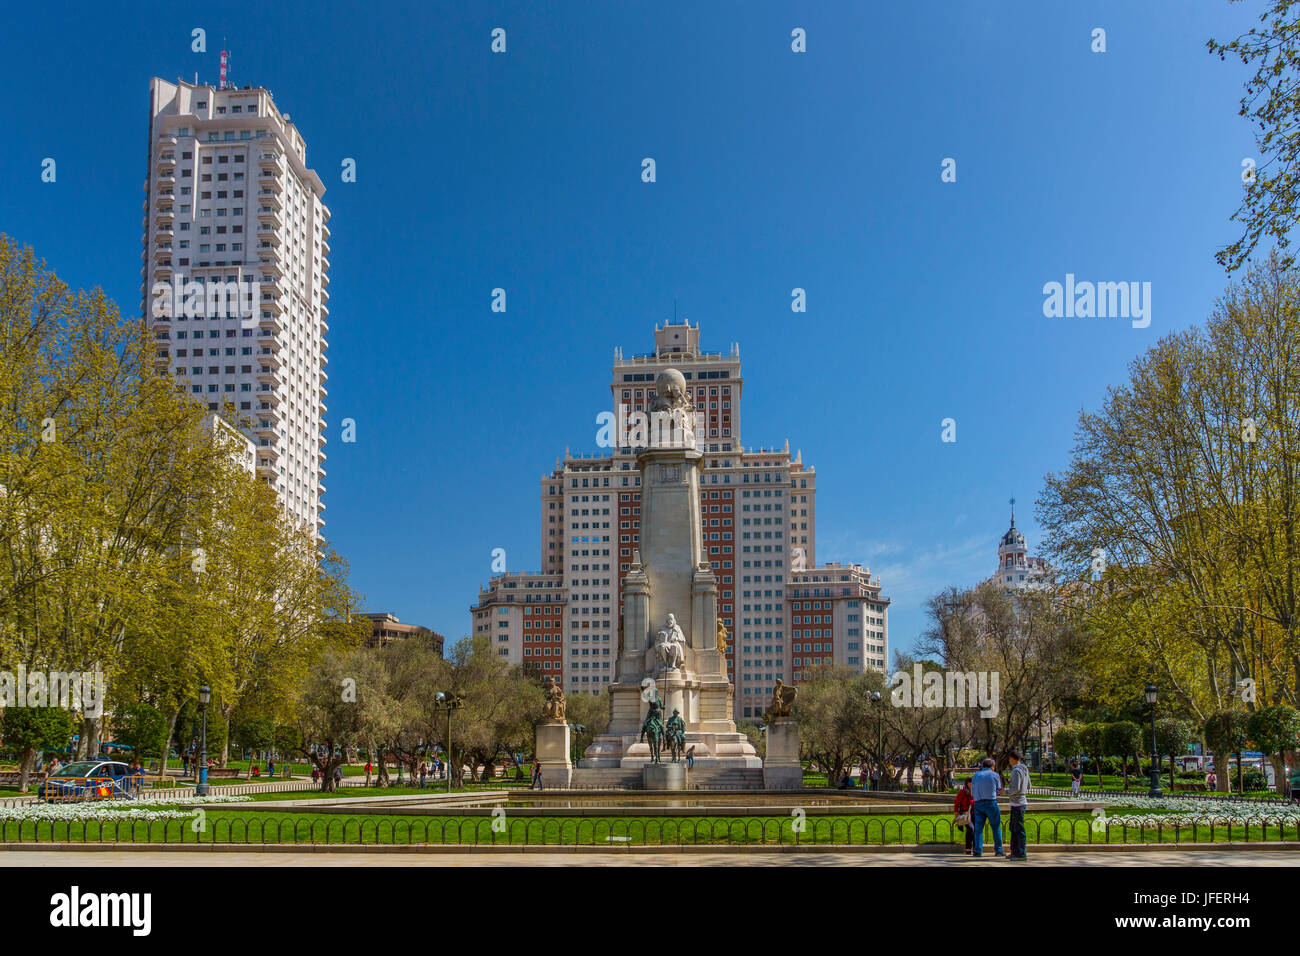 España, Madrid, Plaza de España, monumento de Cervantes (Don Quijote) Foto de stock